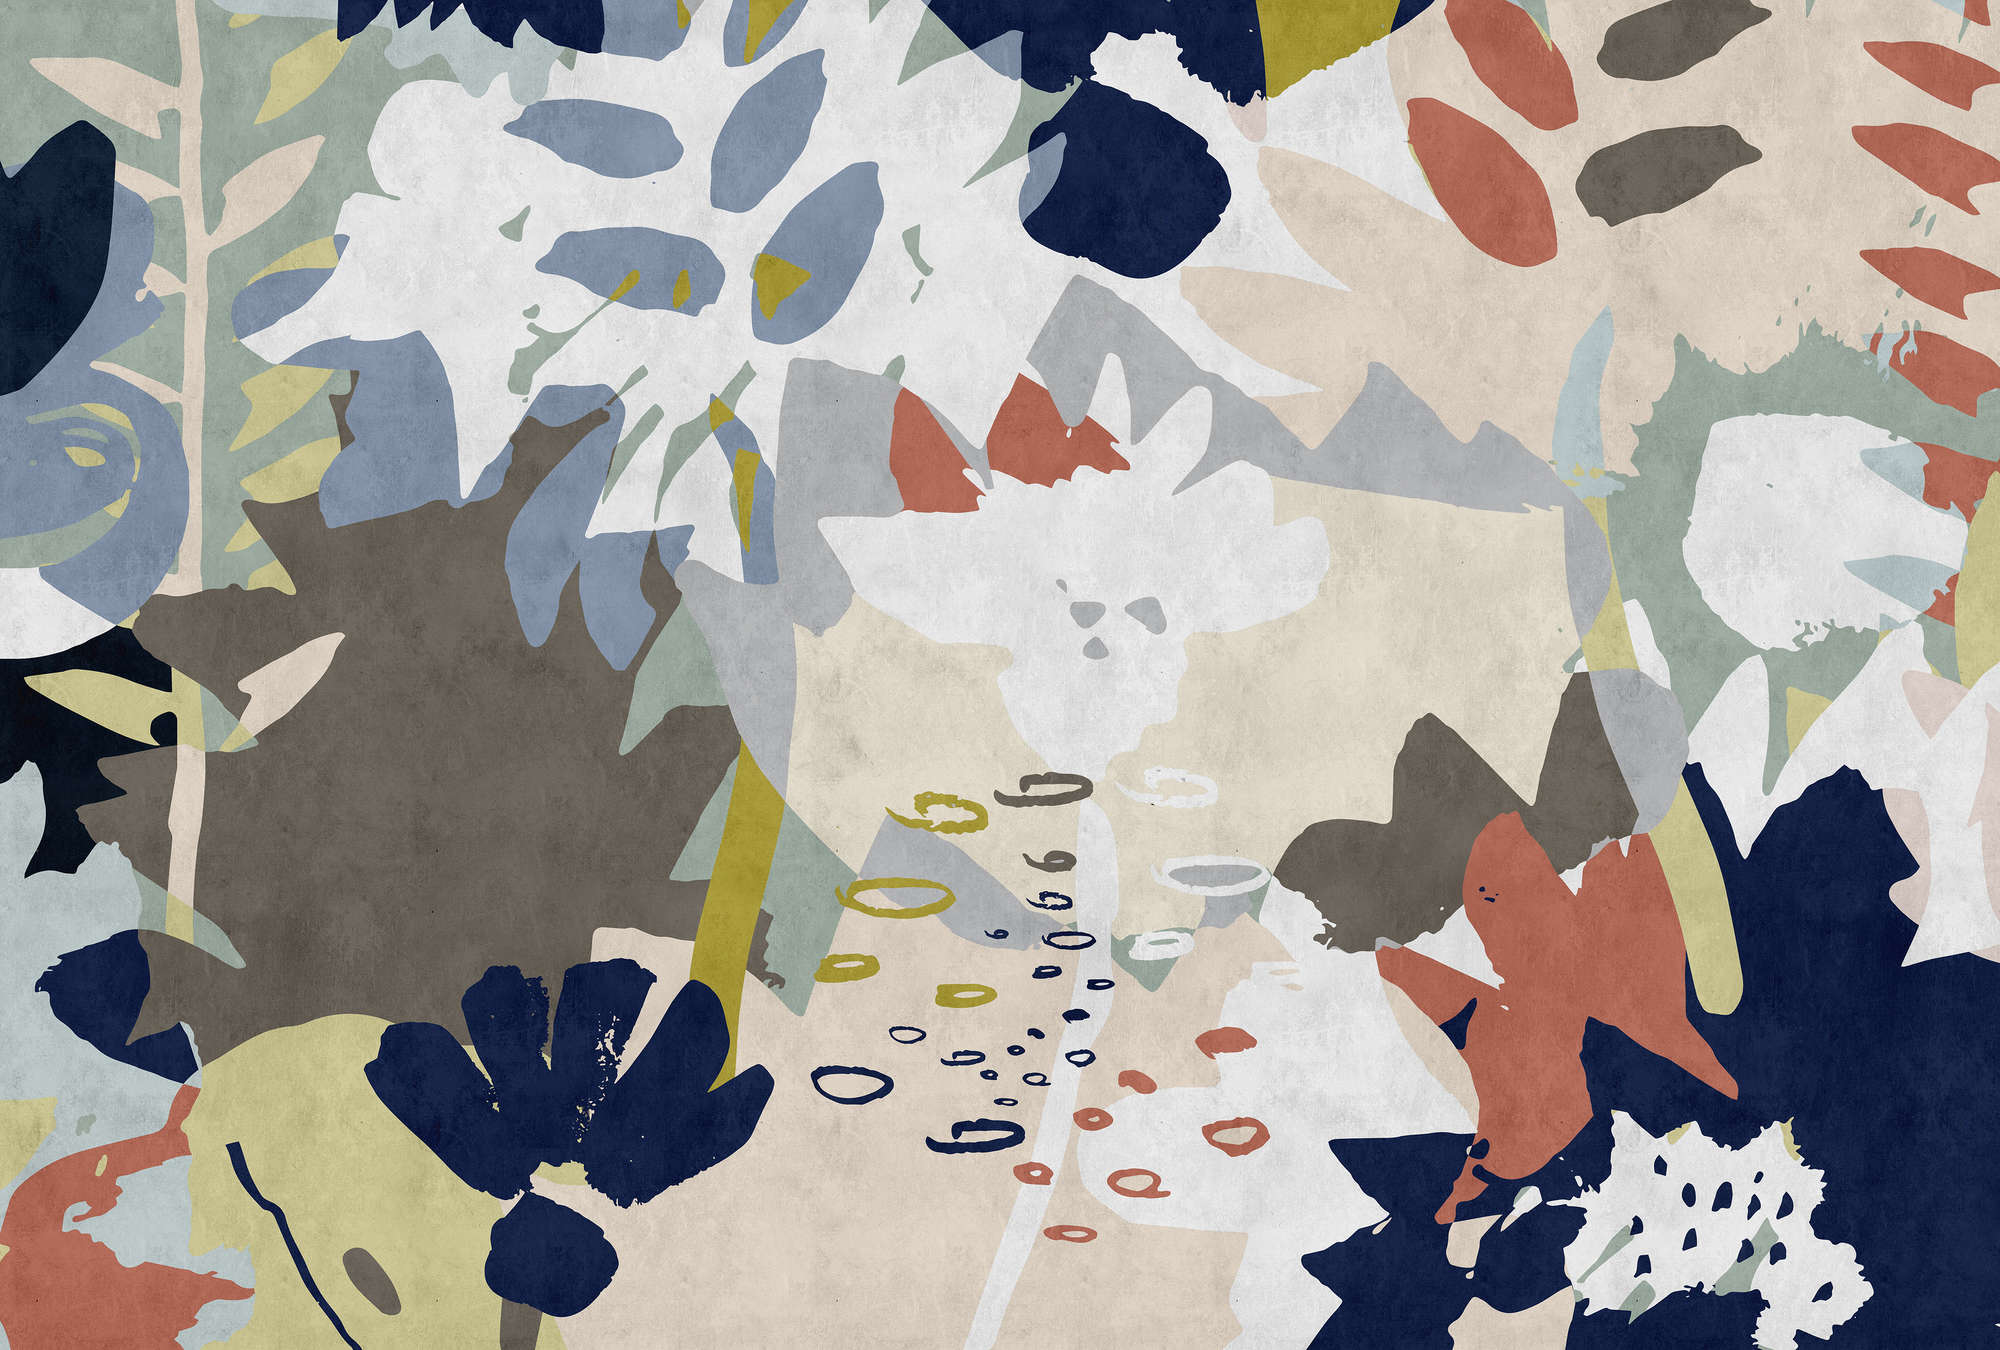             Floral Collage 4 - Papier peint avec motif de feuilles colorées - structure buvard - bleu, marron | structure intissé
        